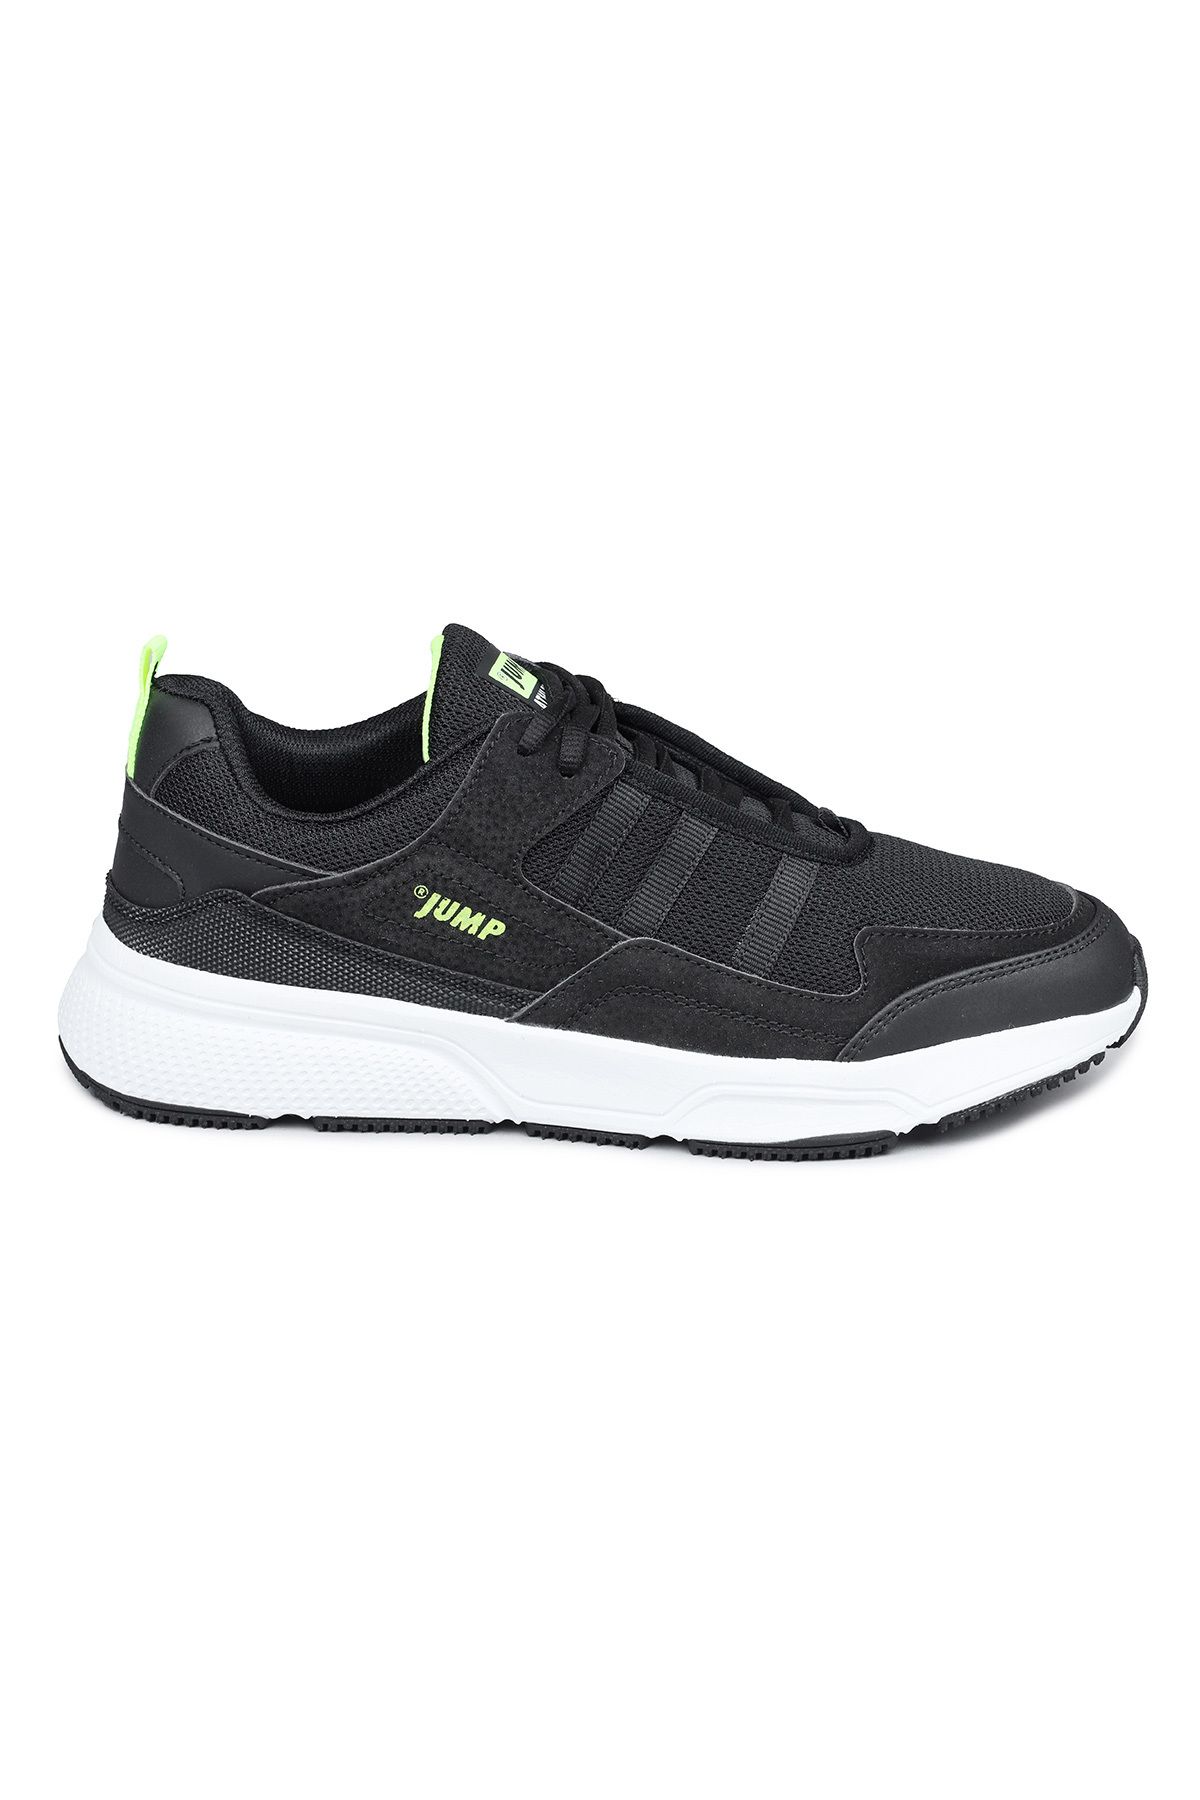 Jump 27693 Siyah - Neon Yeşil Erkek Sneaker Günlük Spor Ayakkabı